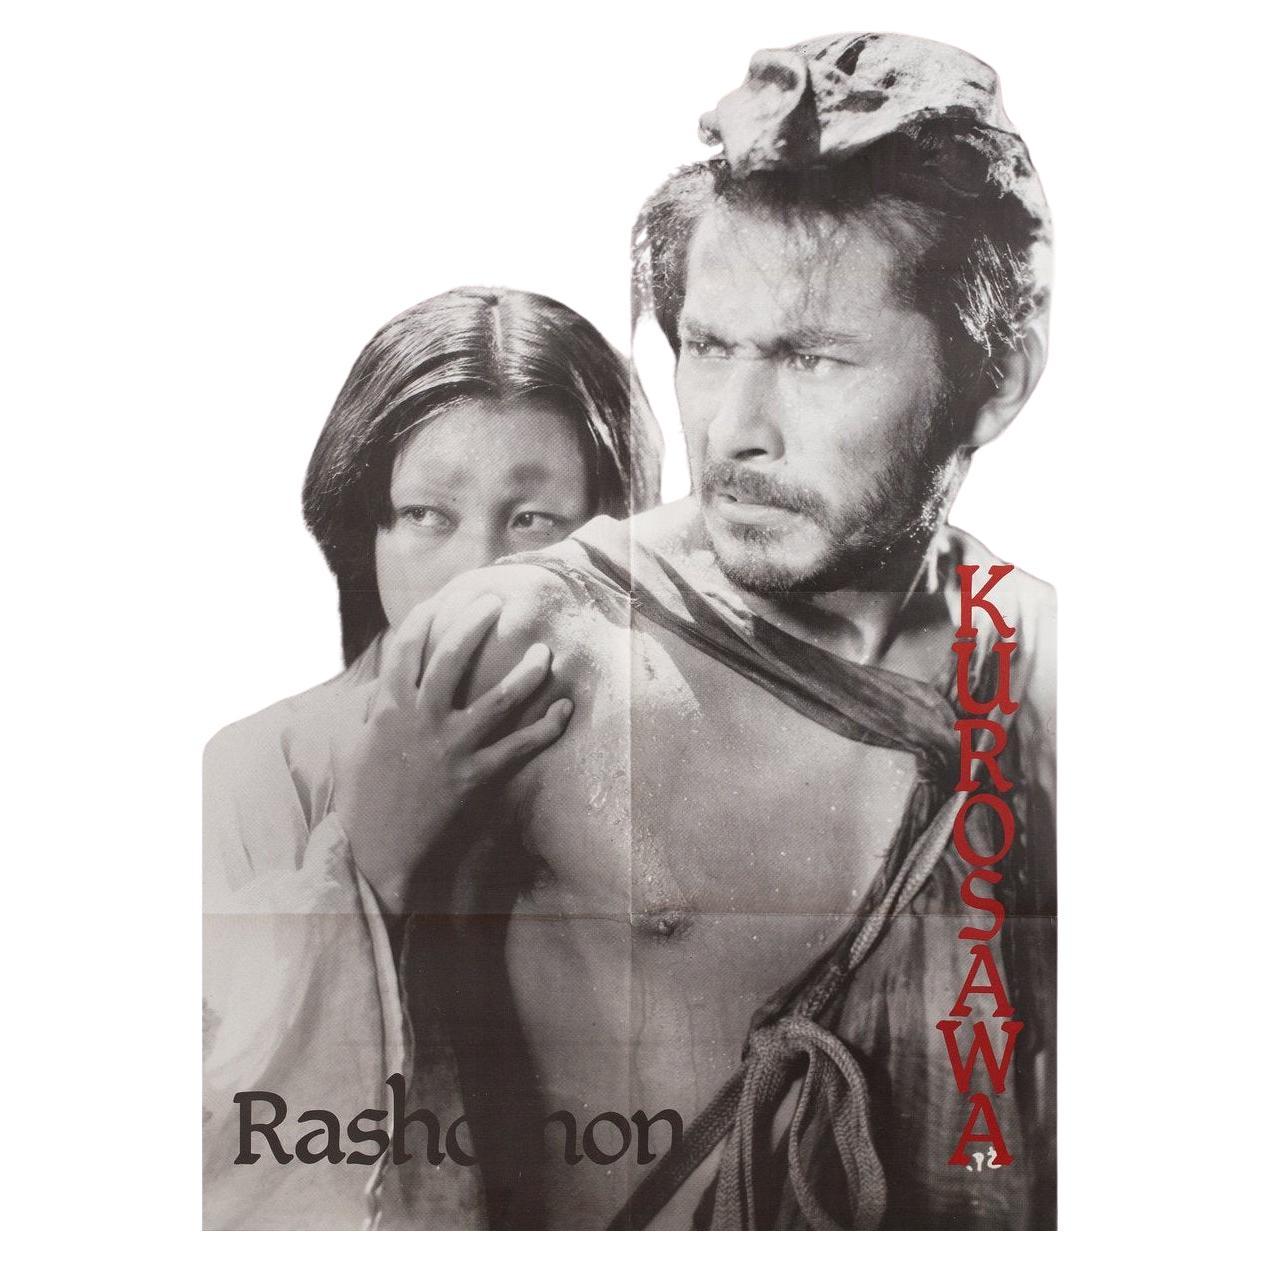 Affiche de demi-grane du film français Rashomon, années 1980